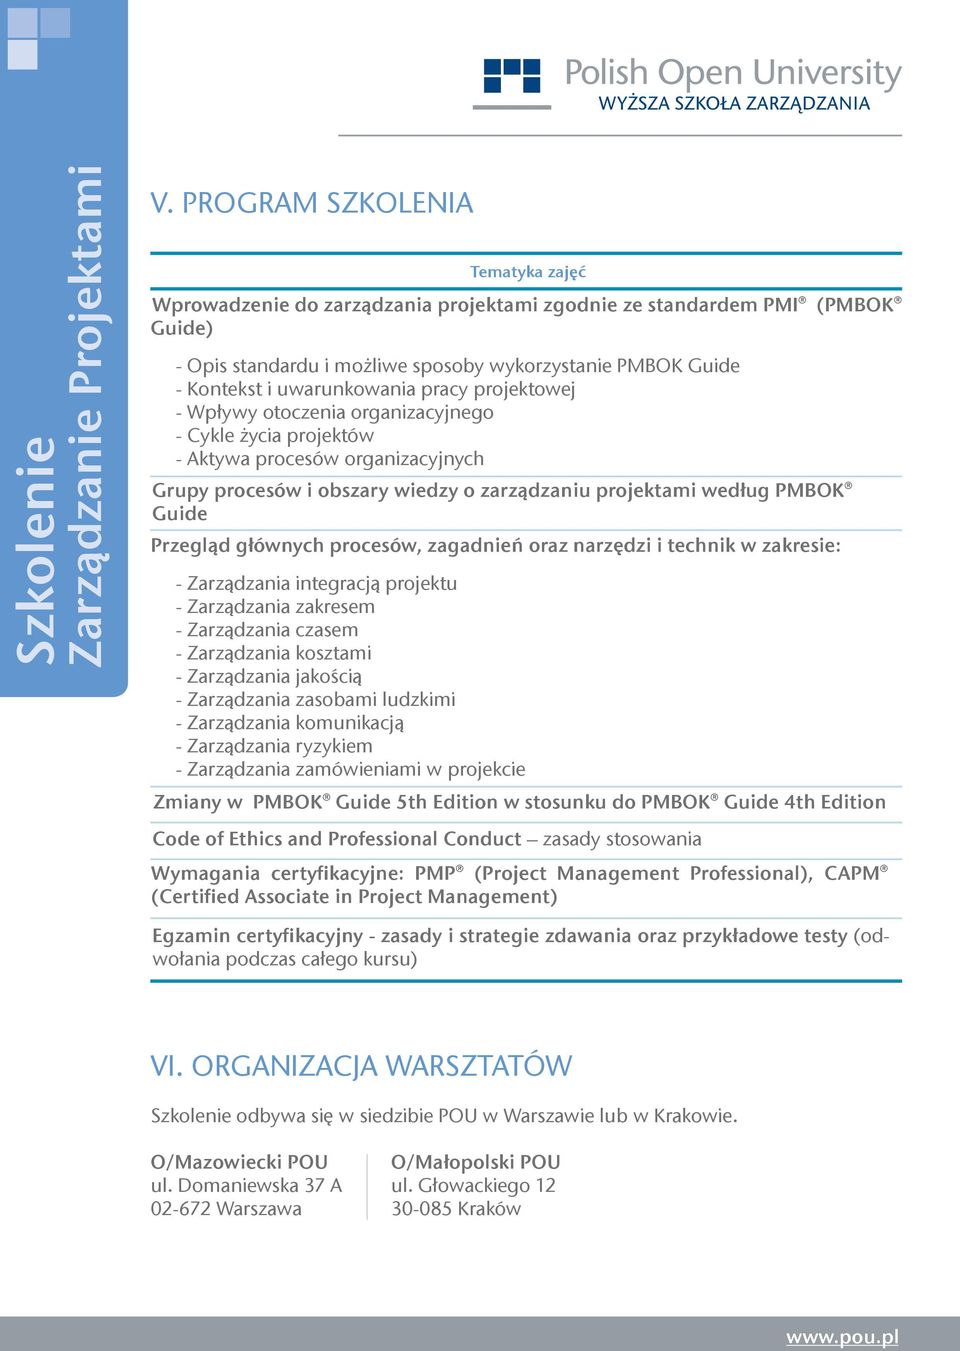 Guide Przegląd głównych procesów, zagadnień oraz narzędzi i technik w zakresie: - Zarządzania integracją projektu - Zarządzania zakresem - Zarządzania czasem - Zarządzania kosztami - Zarządzania